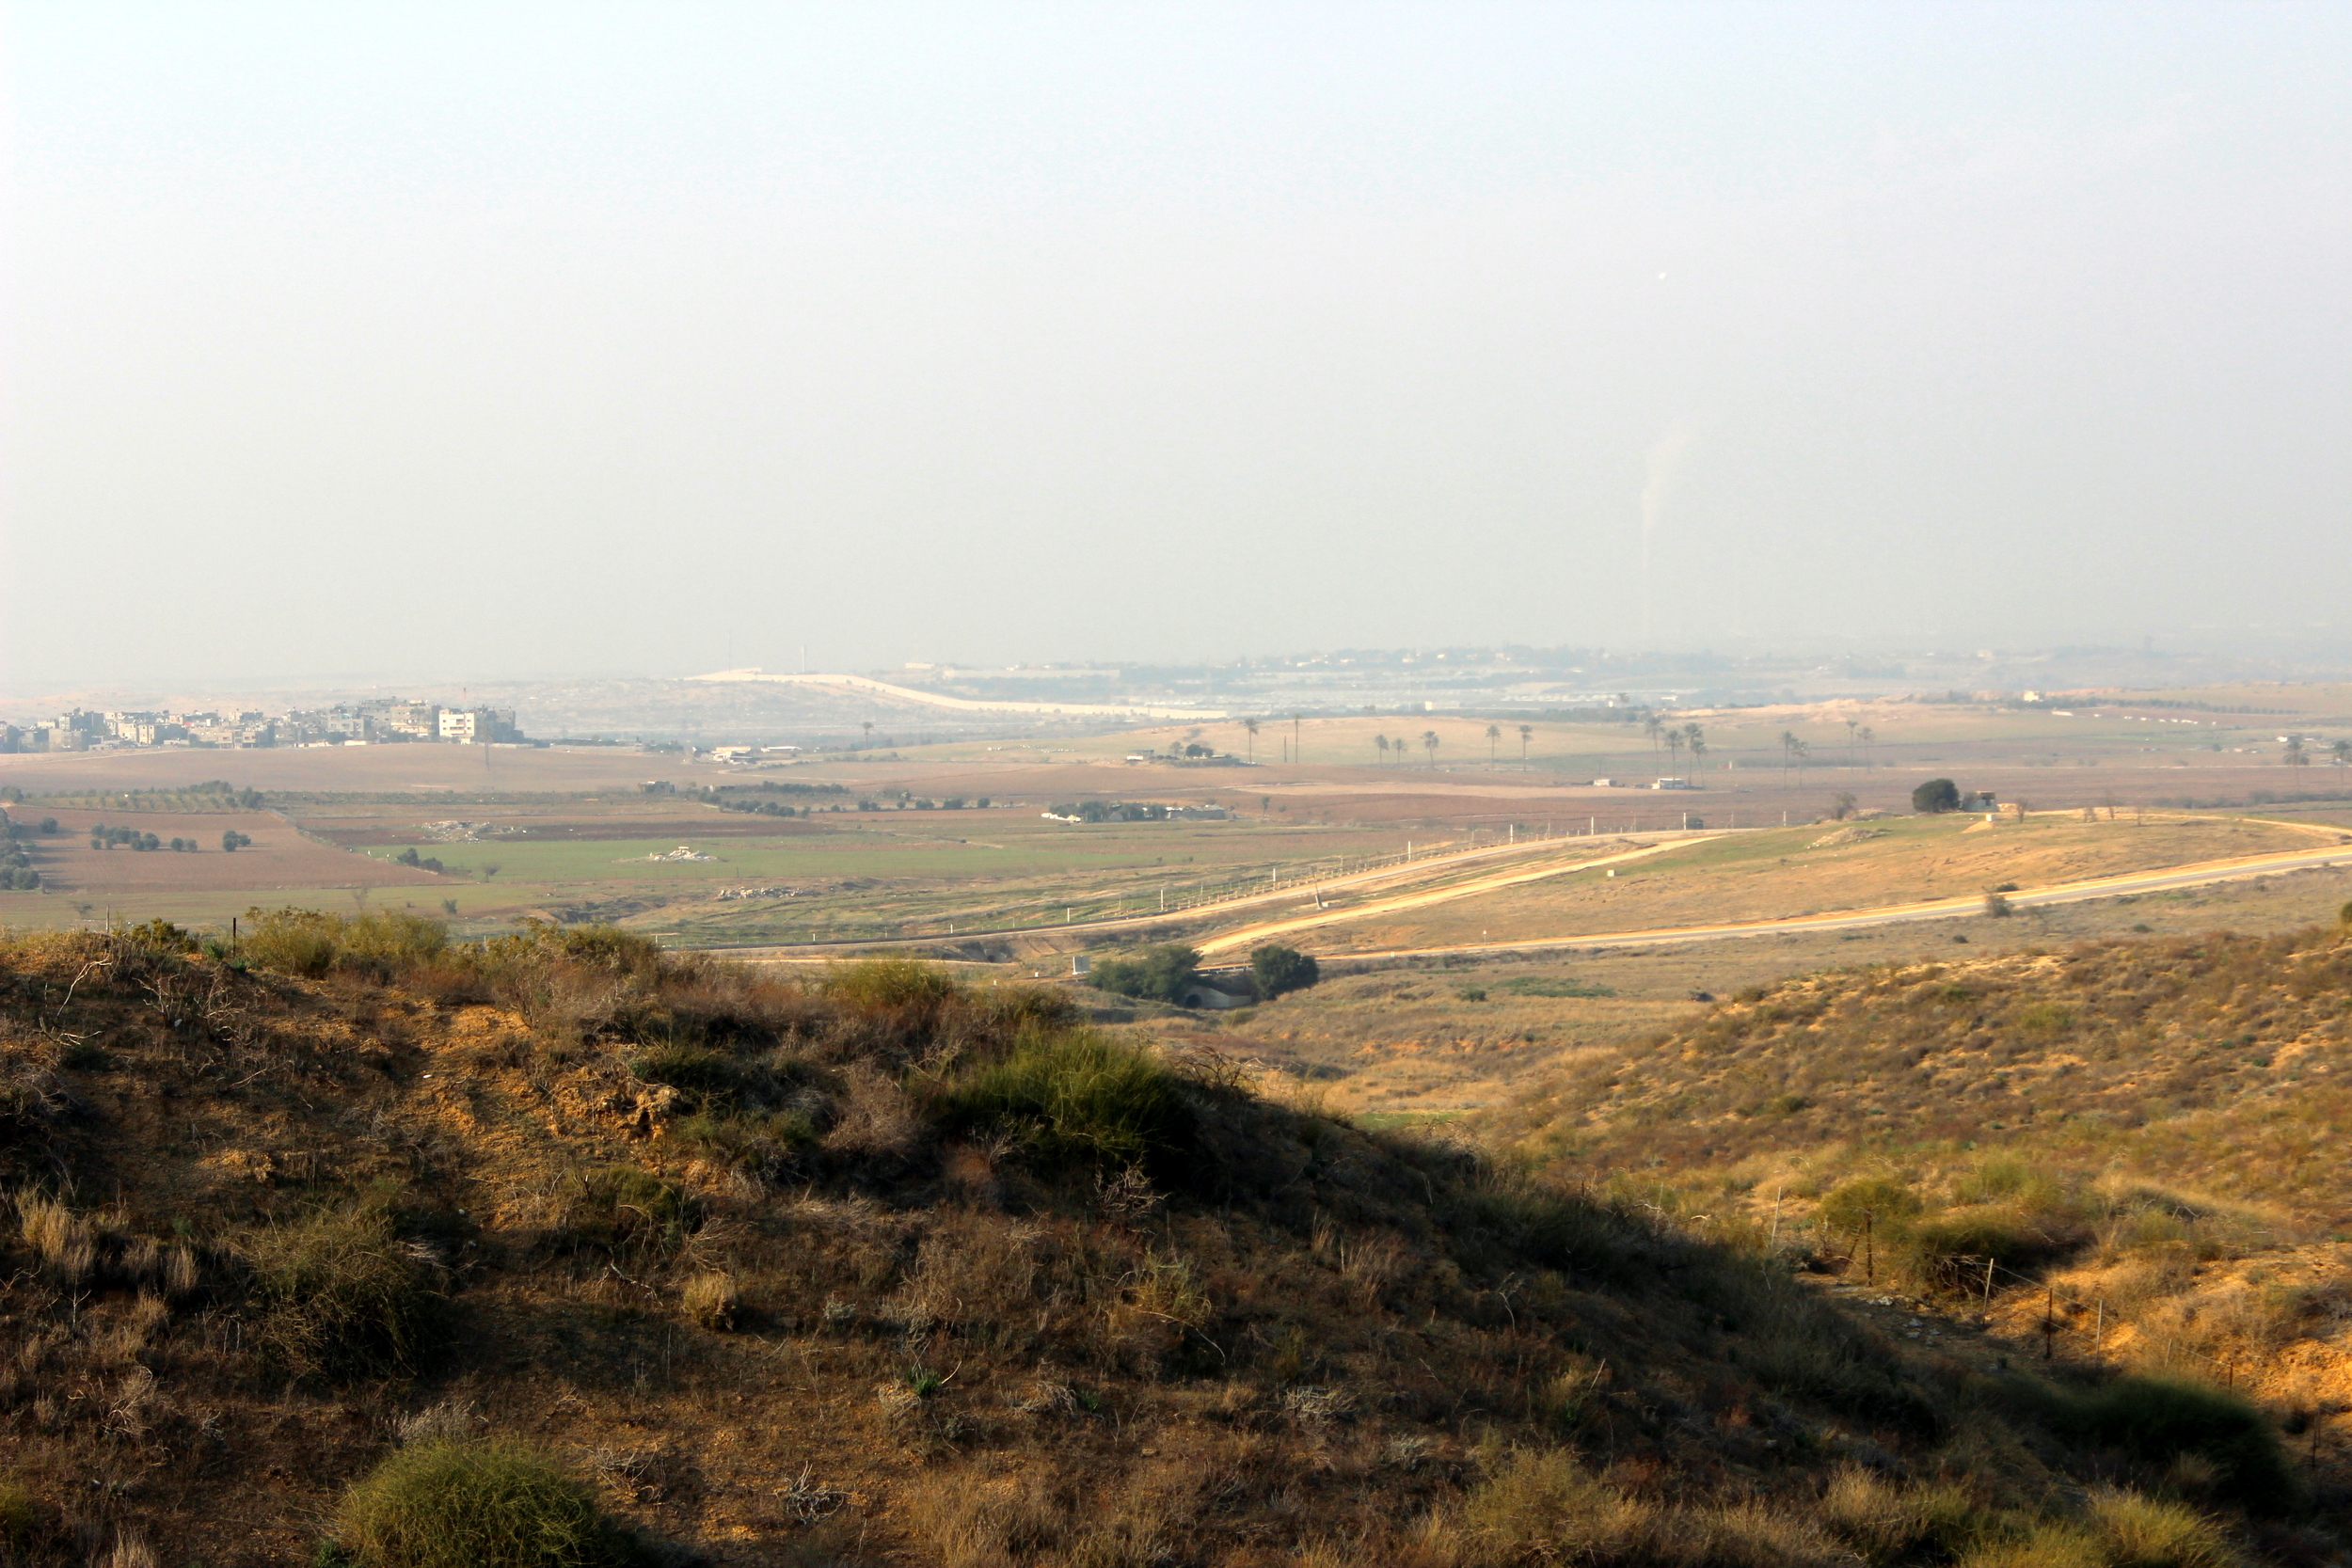 View towards Gaza Strip